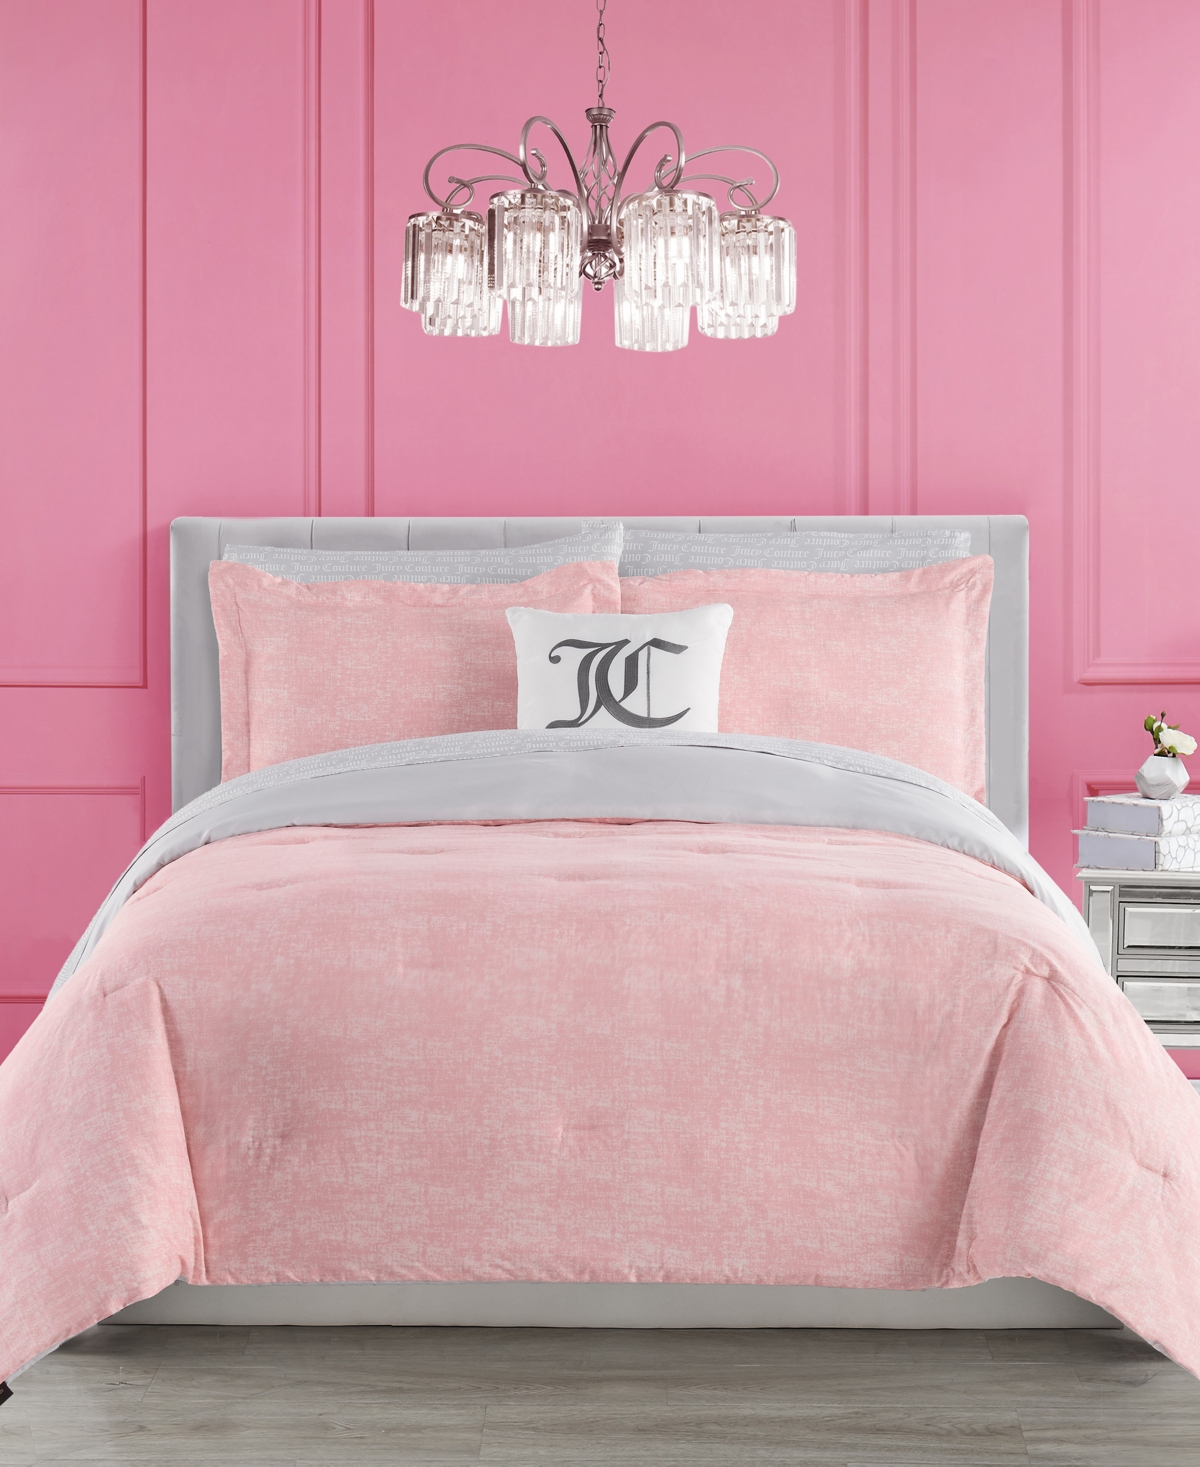 Juicy Couture Texture 8-pc. Comforter Set, Queen In Pink,gray